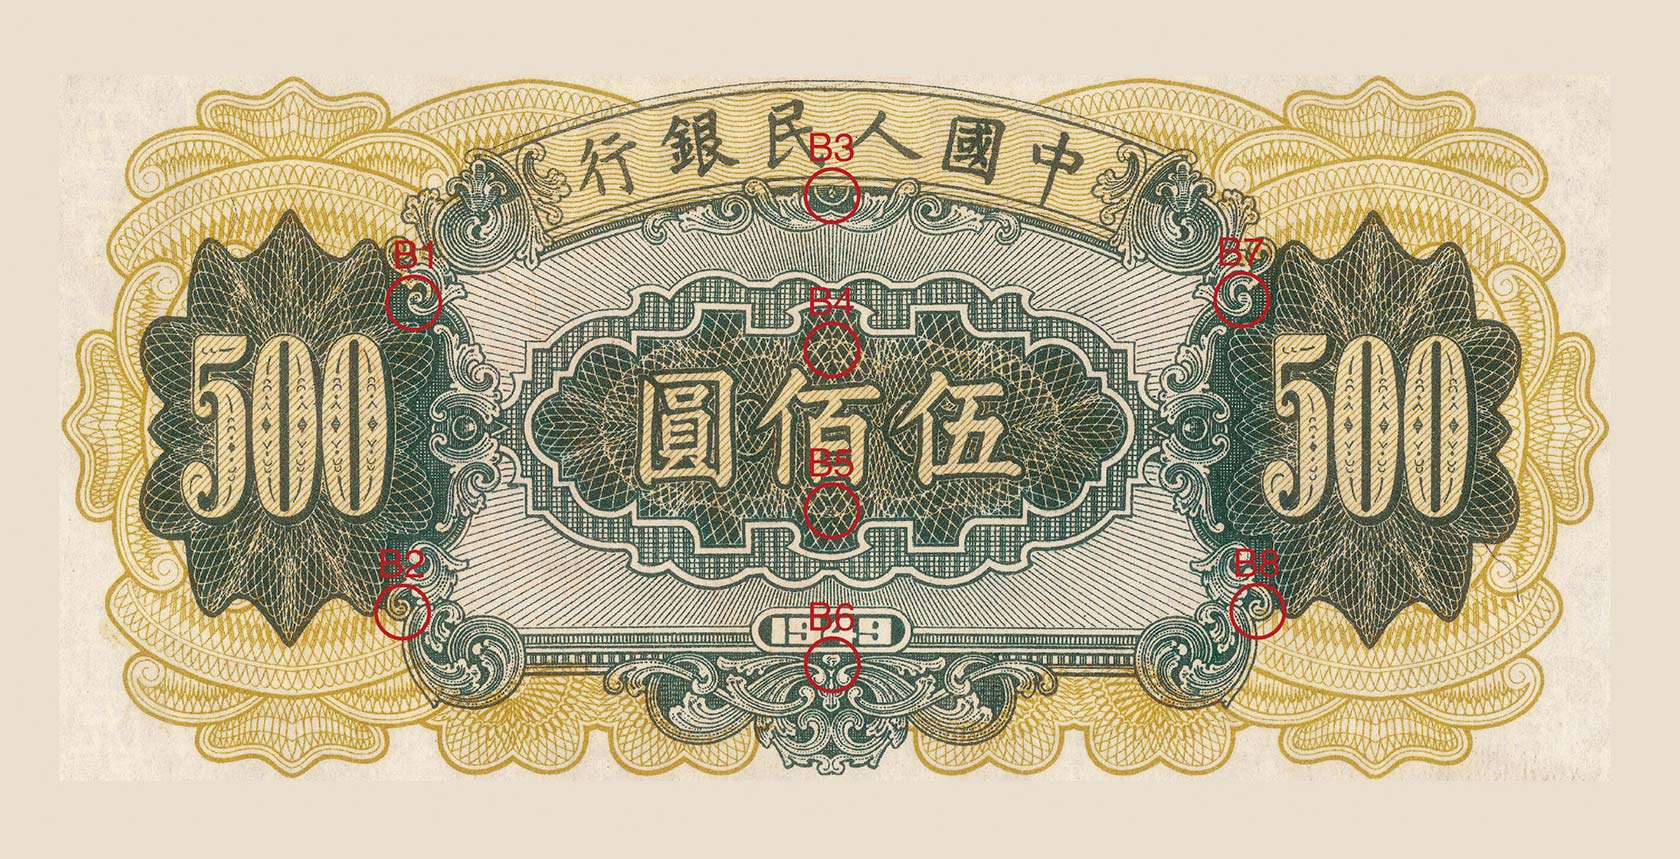 1979年中国银行外汇兑换券一元西湖风景-价格:1元-au24228167-人民币 -加价-7788收藏__收藏热线